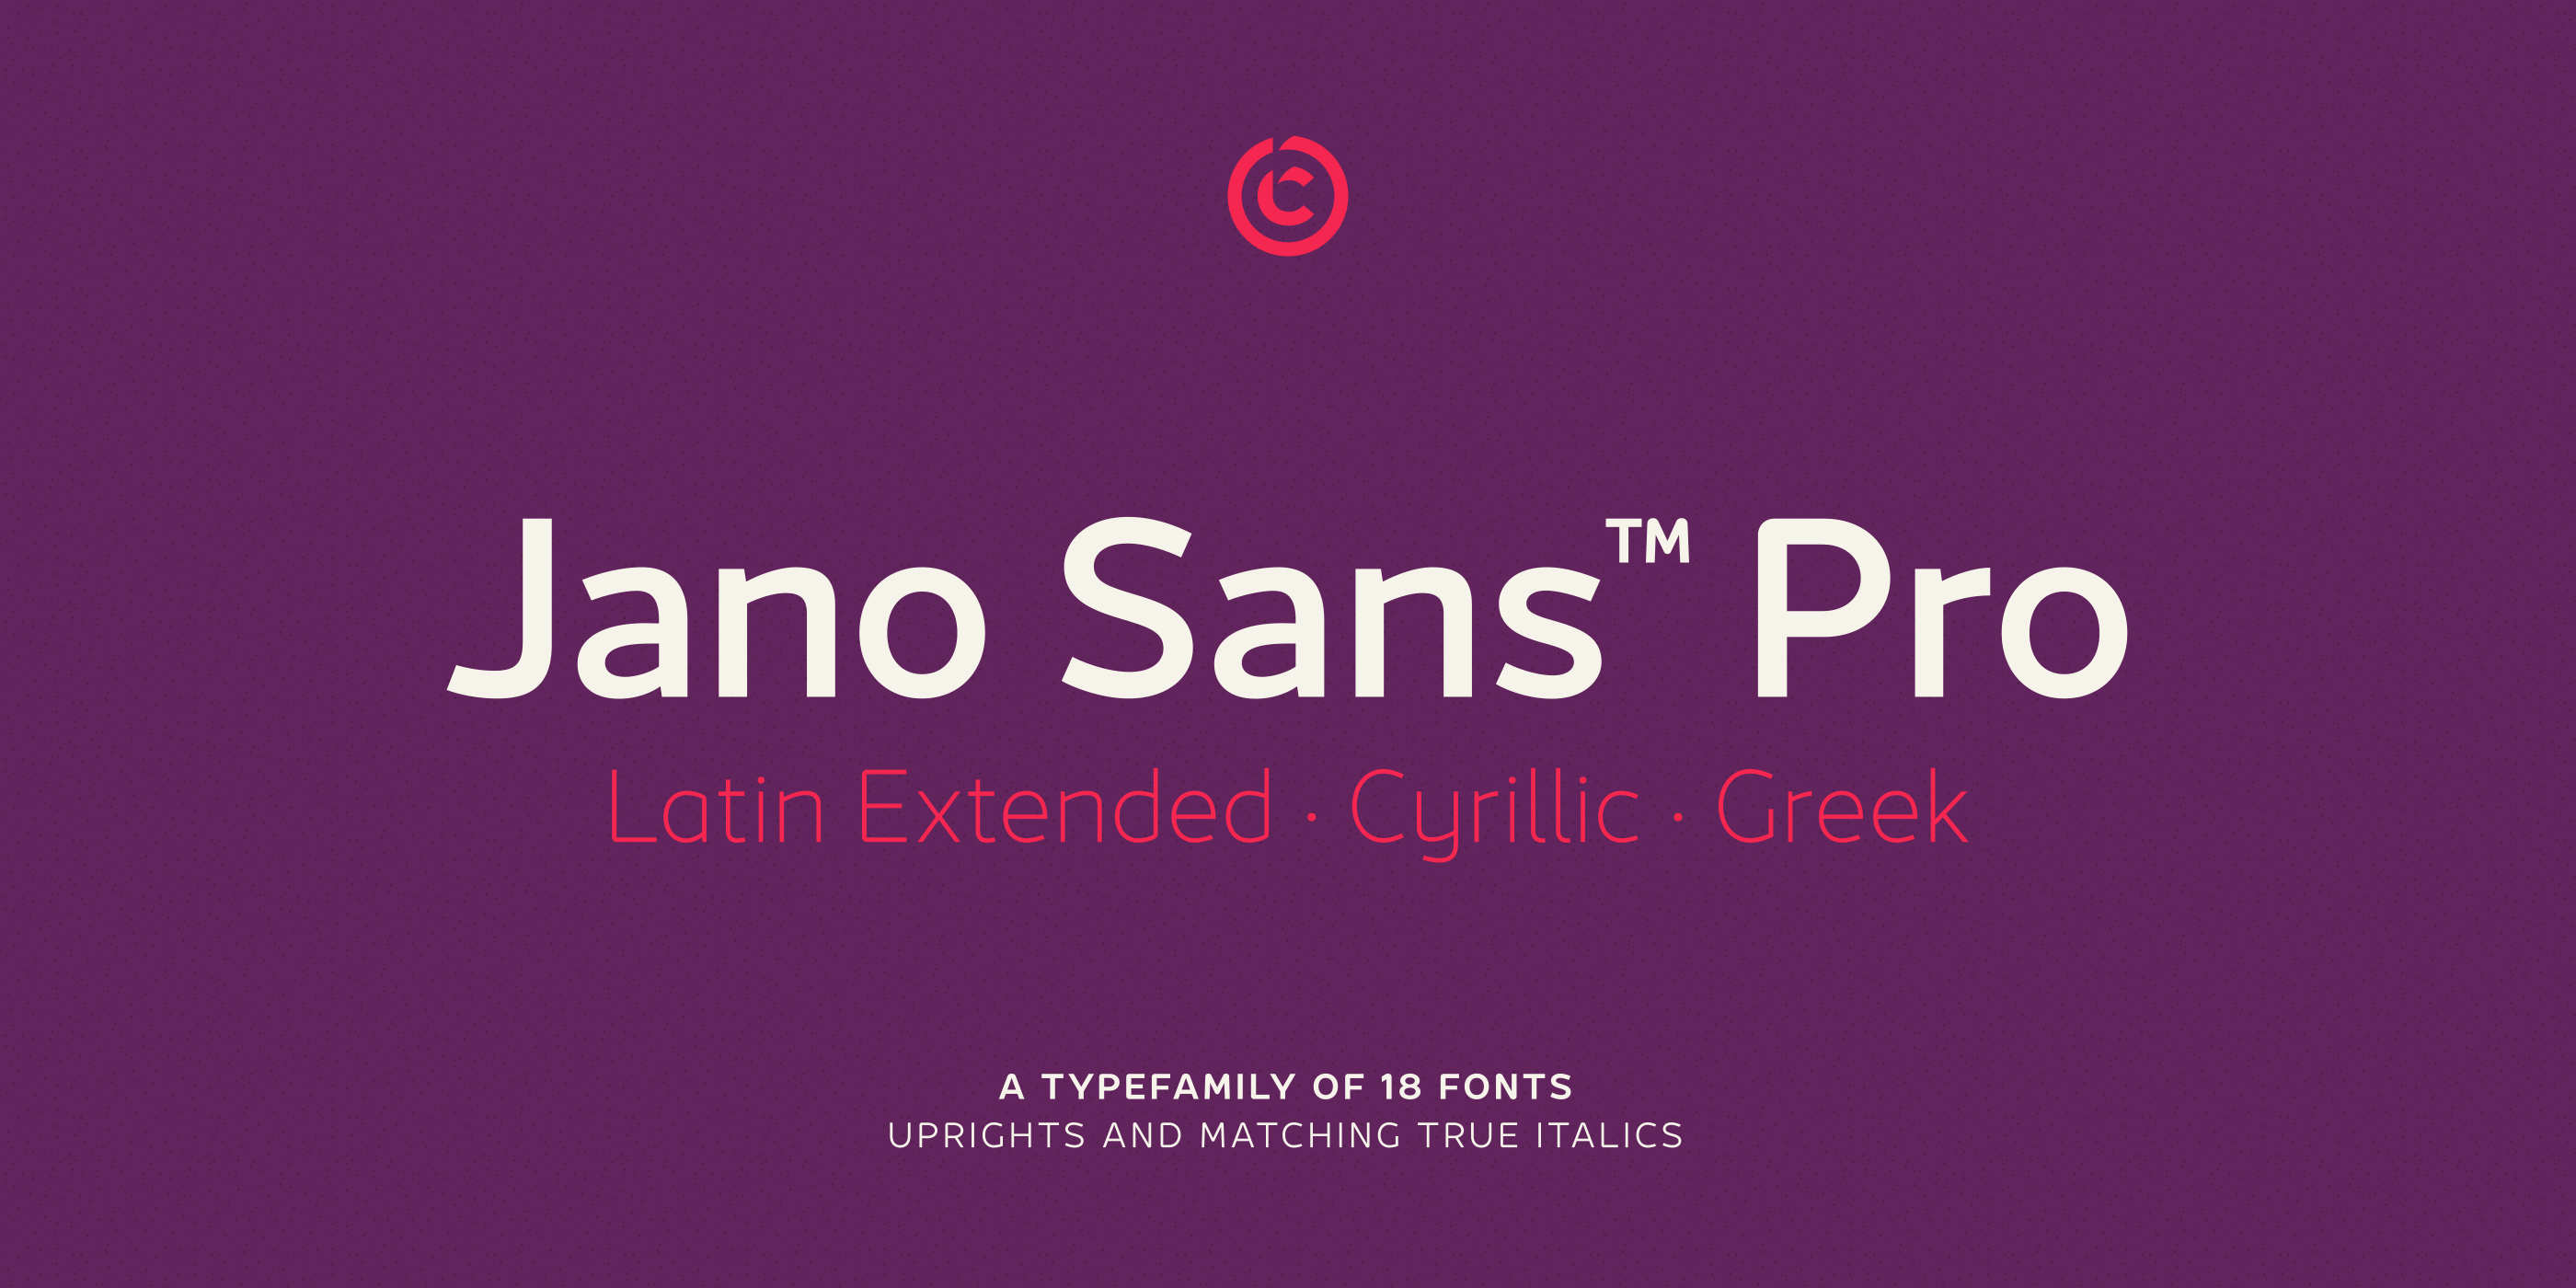 Ejemplo de fuente Jano Sans Pro Extra bold Italic